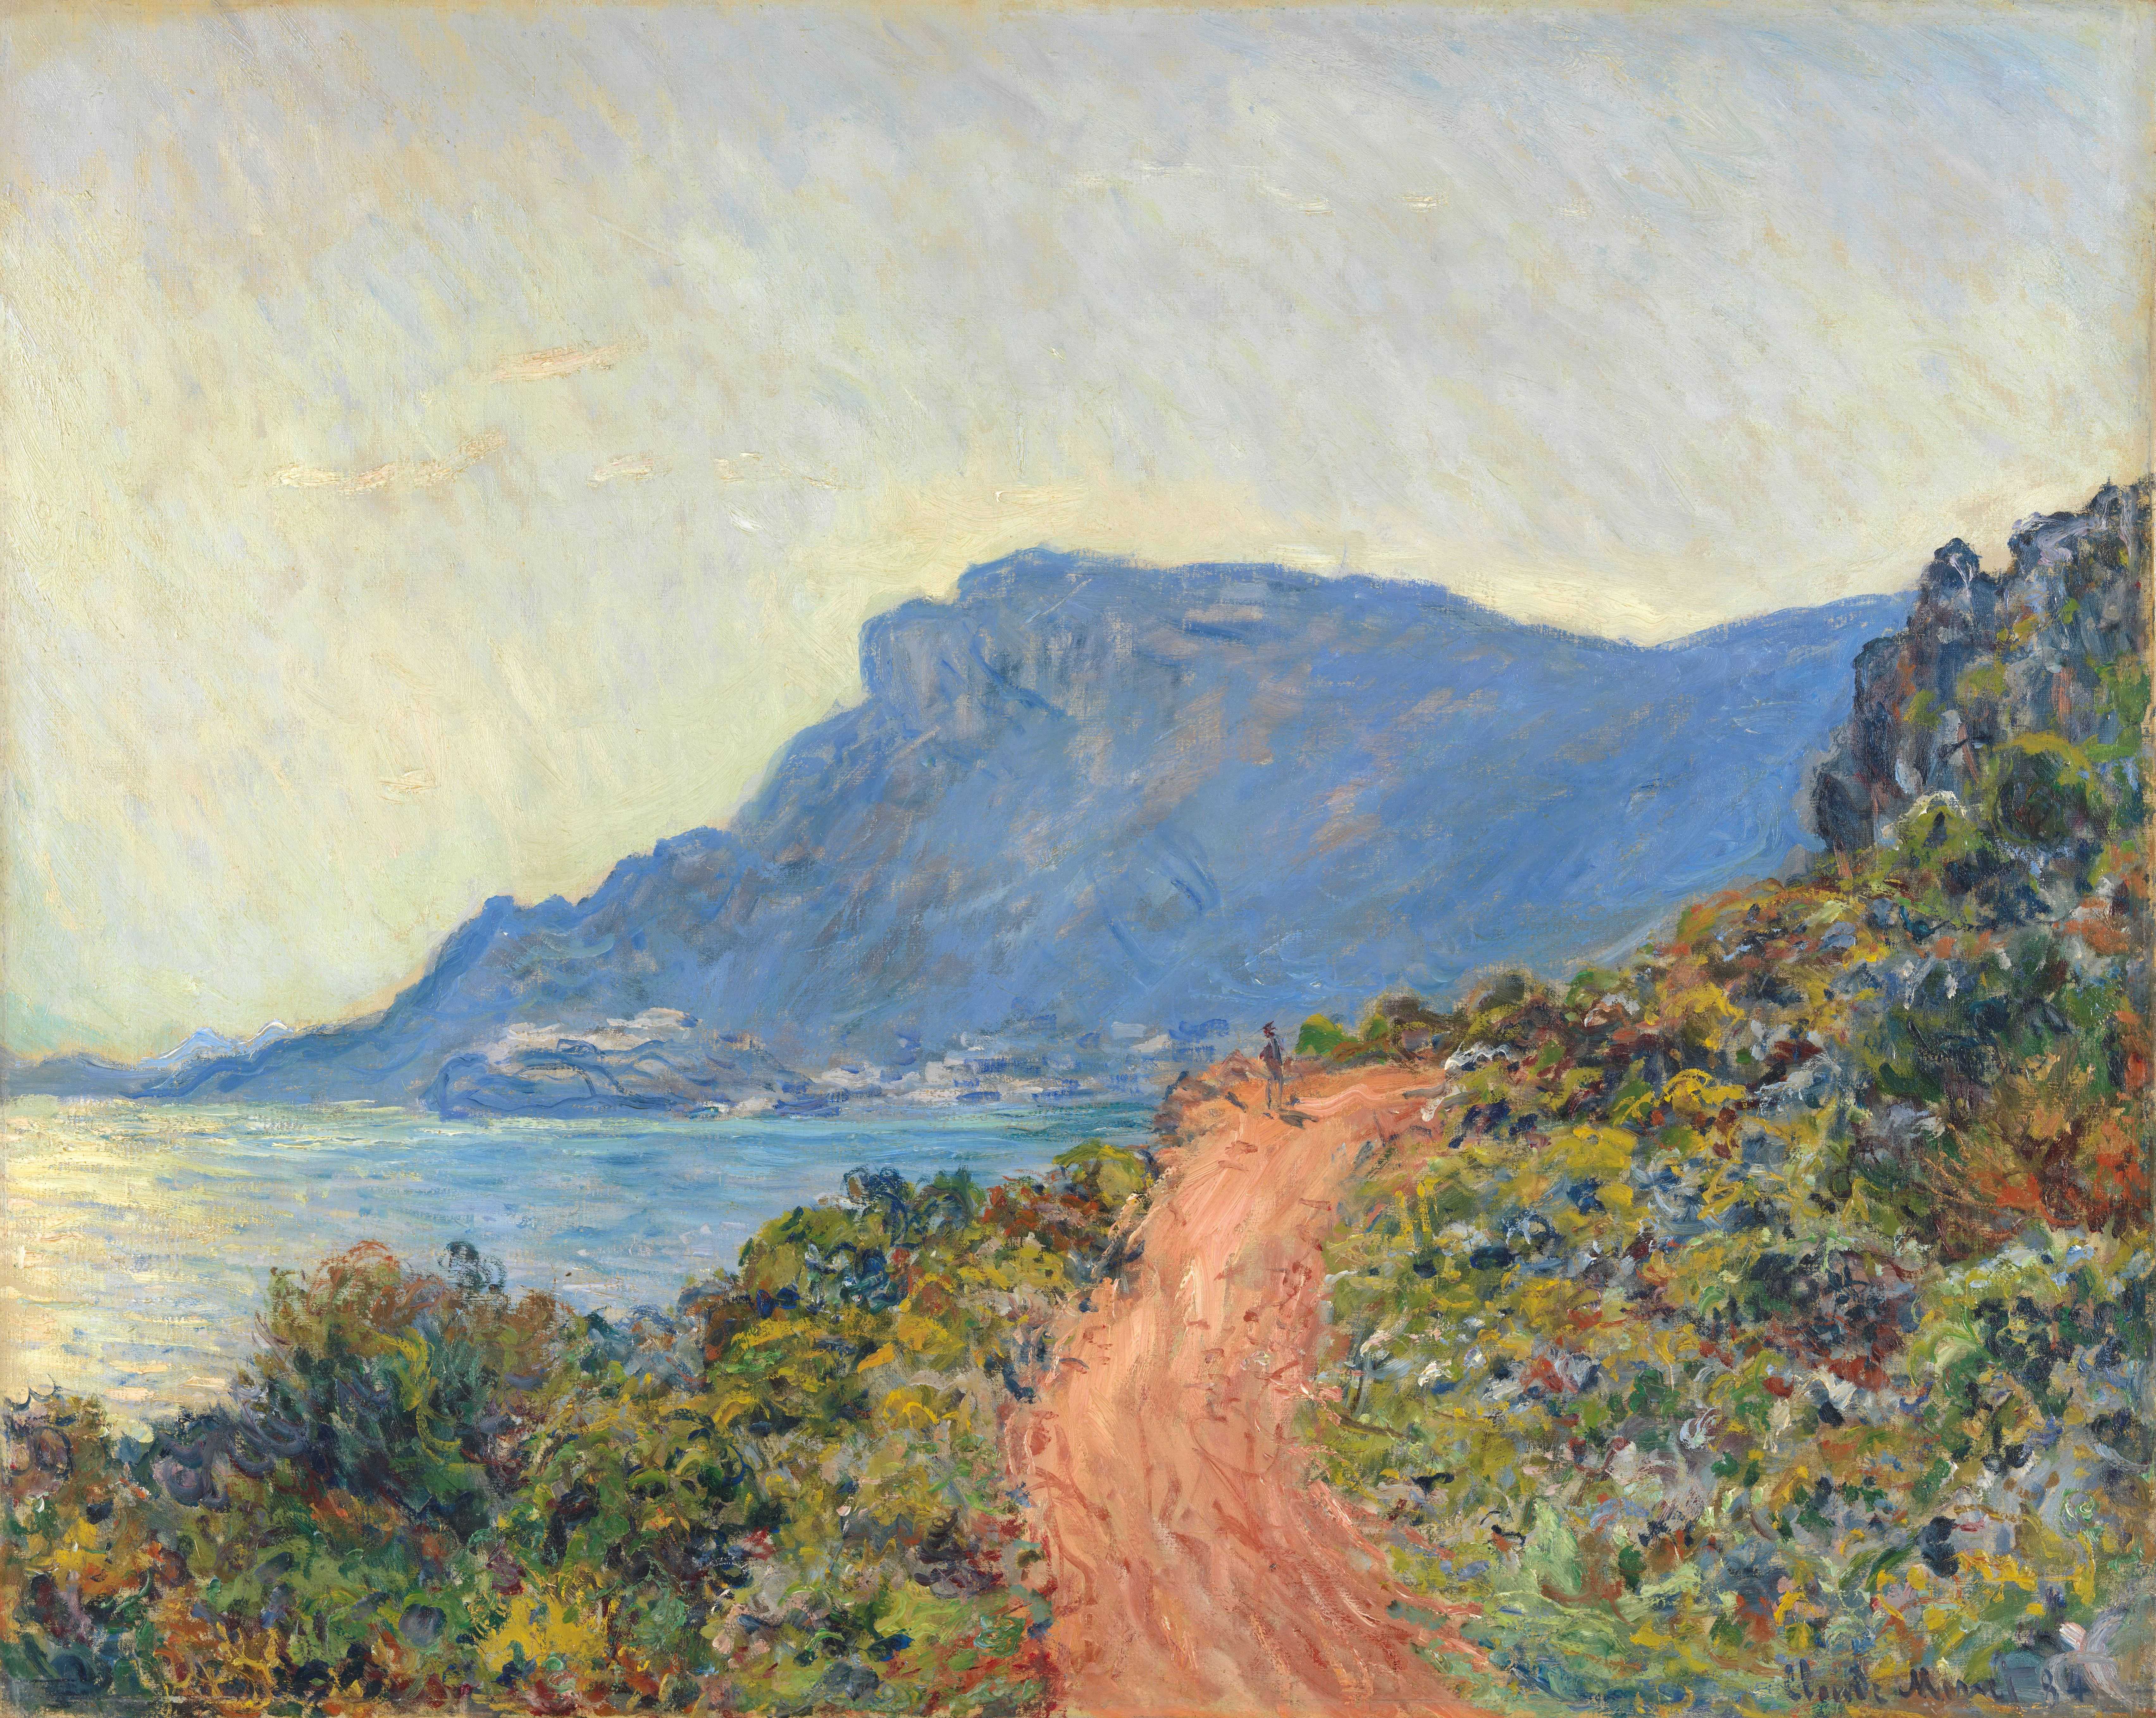 Find out more about Claude Monet - La Corniche near Monaco